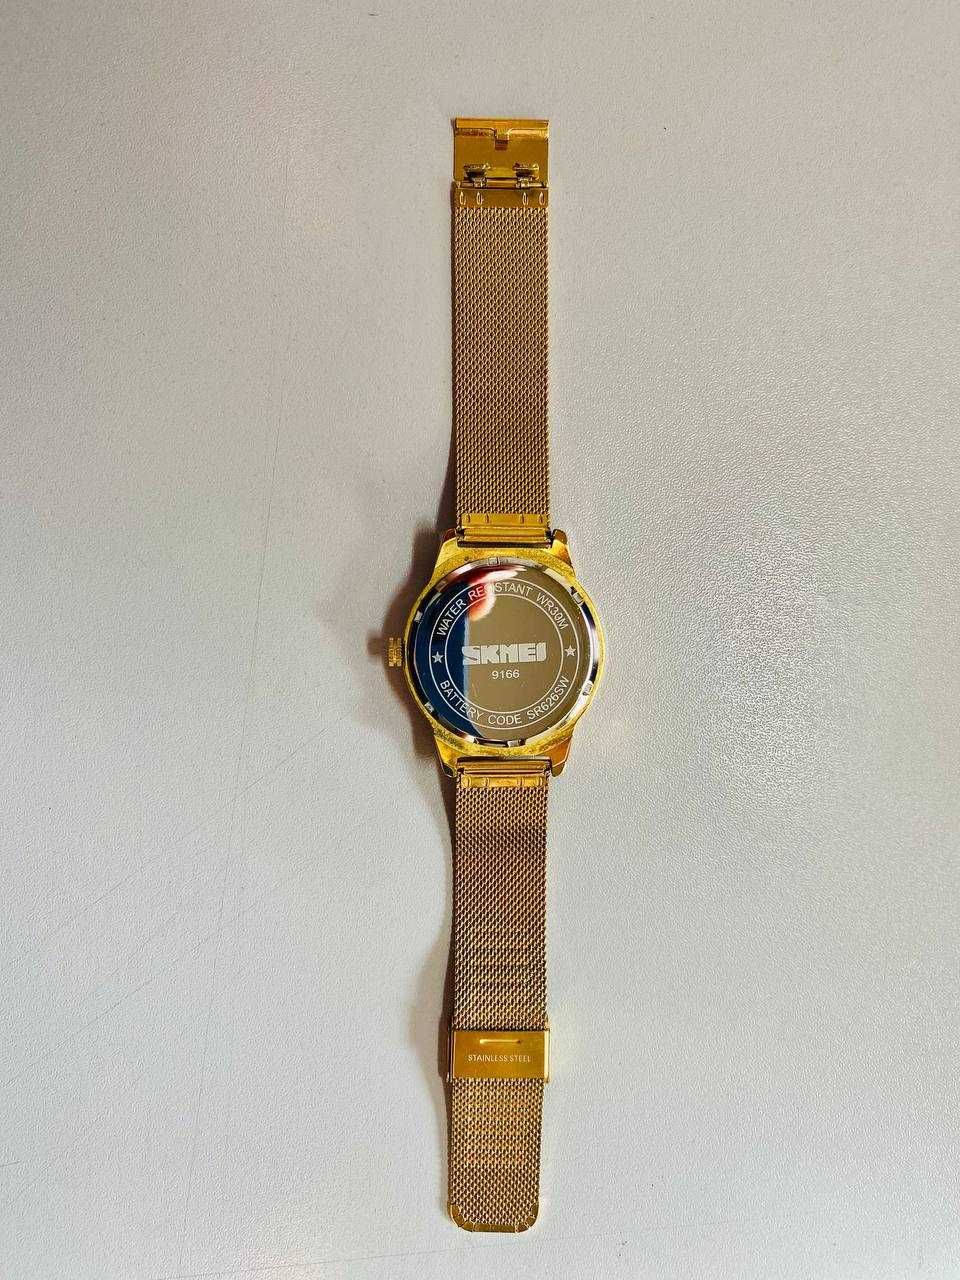 Чоловічий годинник Skmei 9166 Золотистий з чорним циферблатом